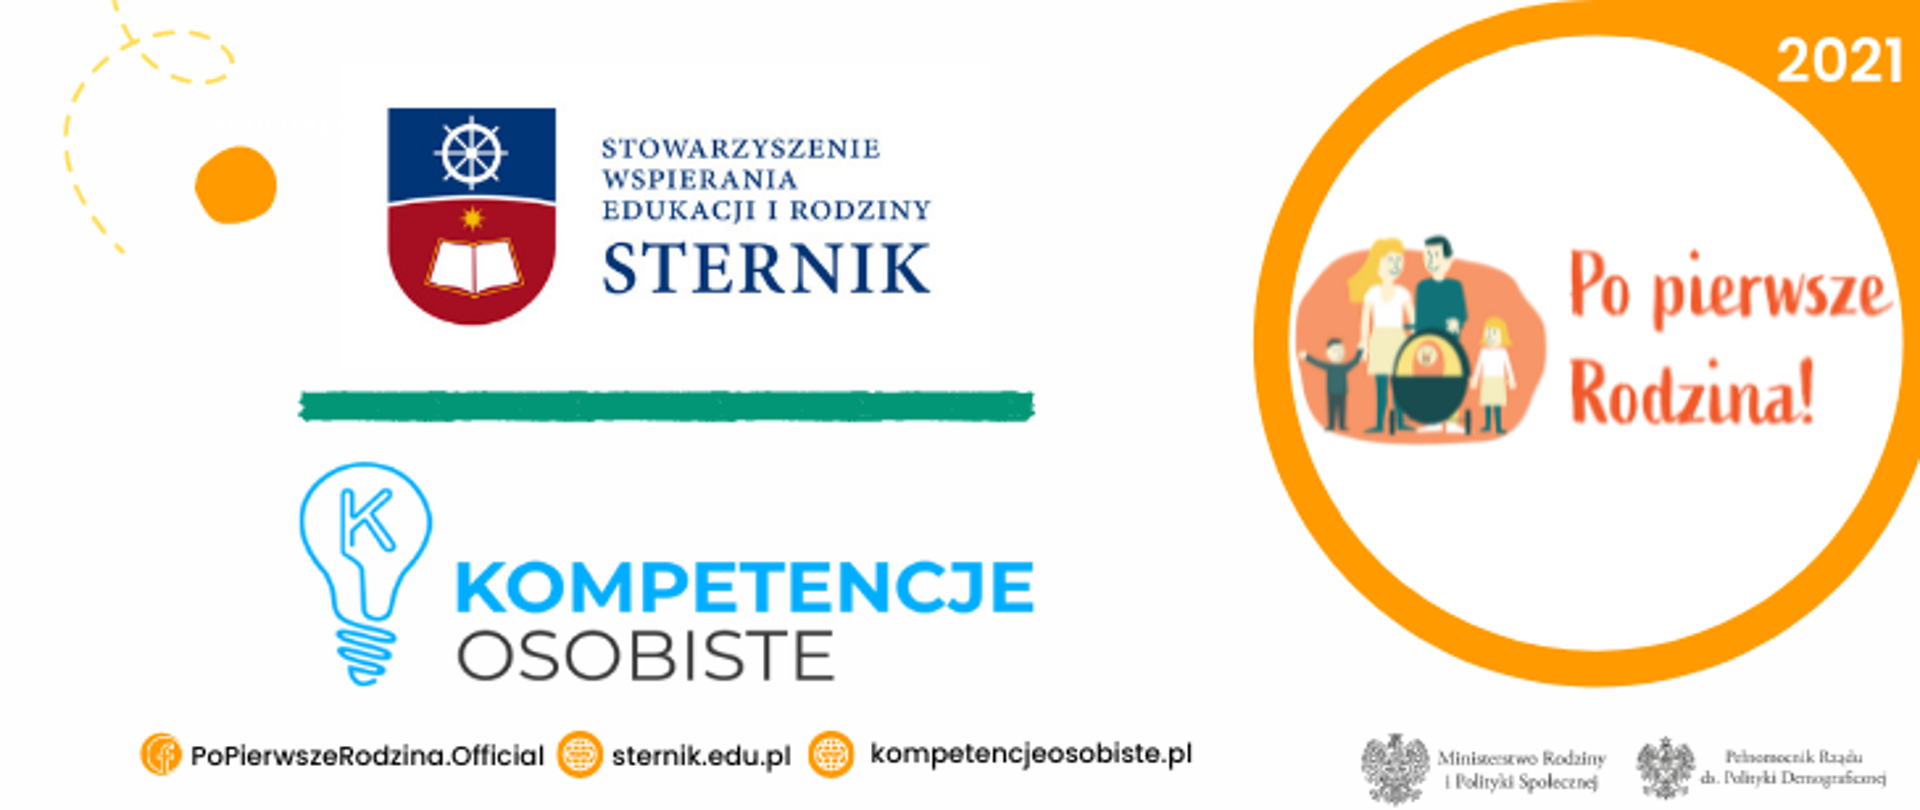 PPR2021_Stowarzyszenie Wspierania Edukacji i Rodziny Sternik